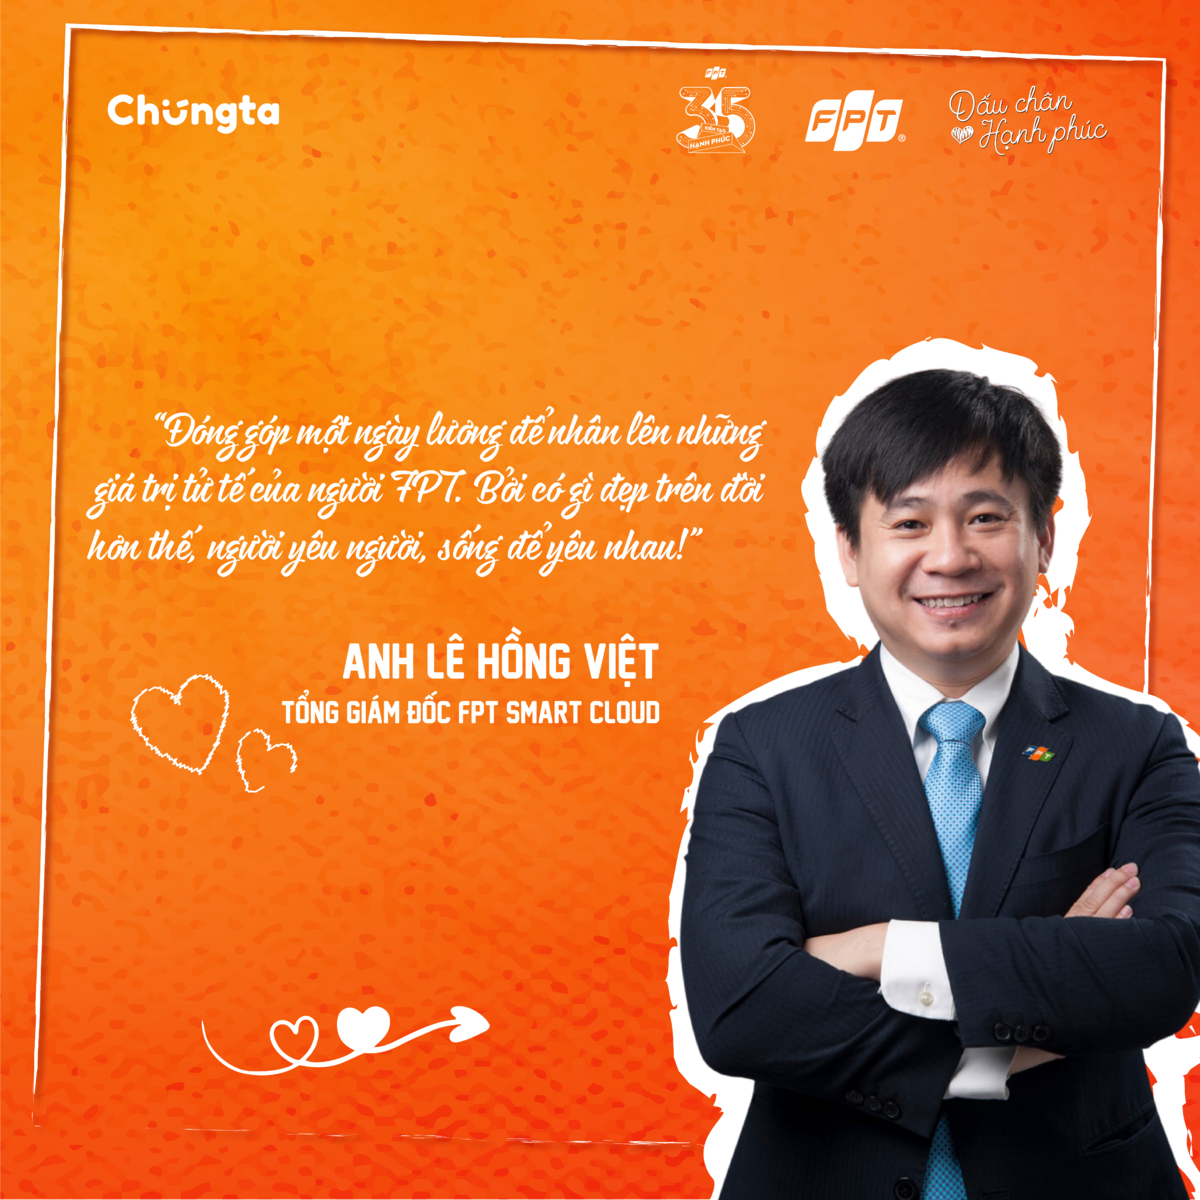 <p style="text-align:justify;"> Trong tháng 3, anh Lê Hồng Việt - Tổng giám đốc FPT Smart Cloud - cũng đã gửi bức tâm thư, kêu gọi người FPT Smart Cloud cùng san sẻ một ngày lương để nhân lên những giá trị tử tế. </p>